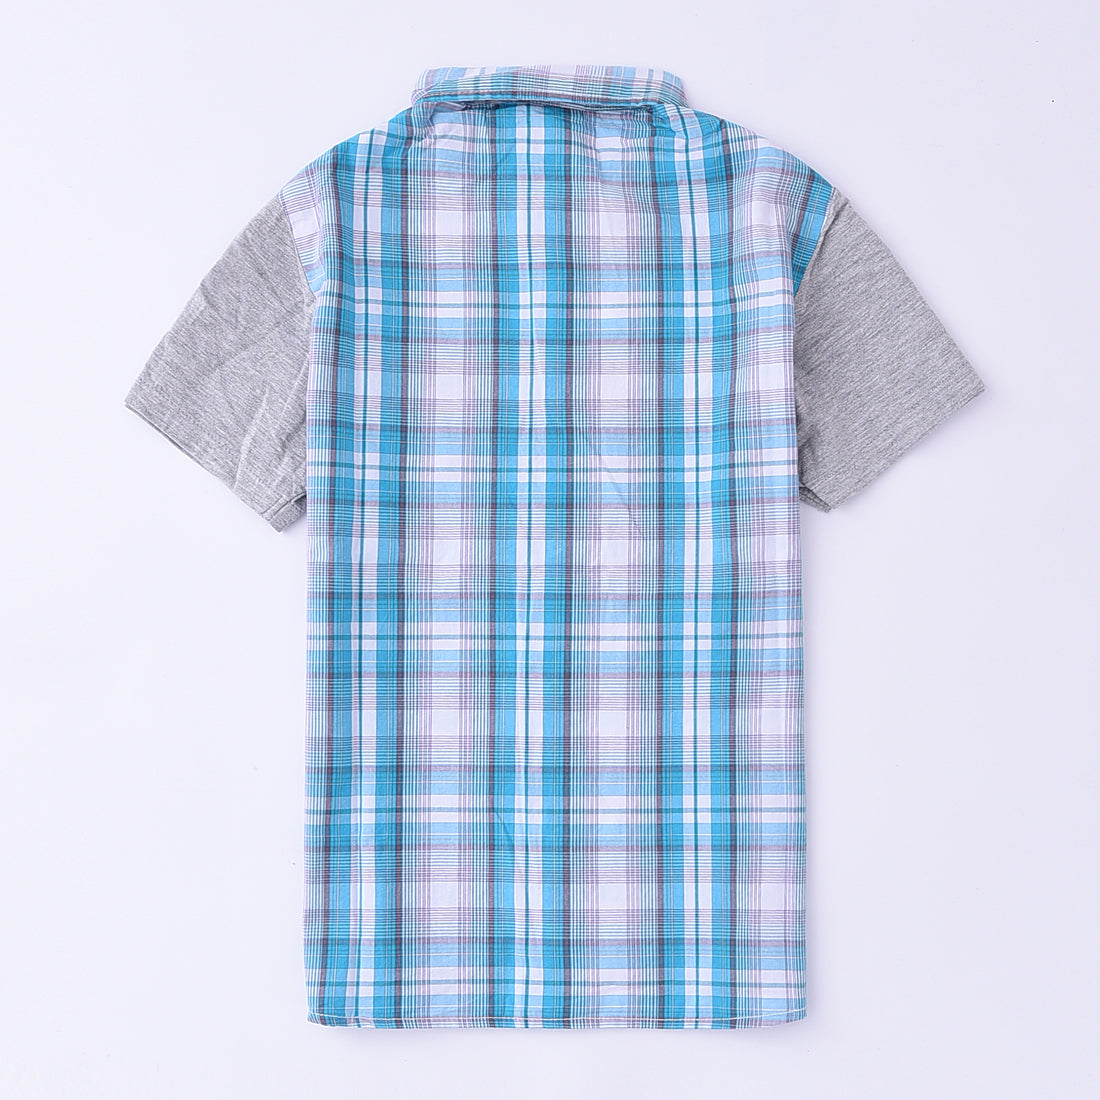 Momoland bog boy short sleeve blue/white plaid shirt front